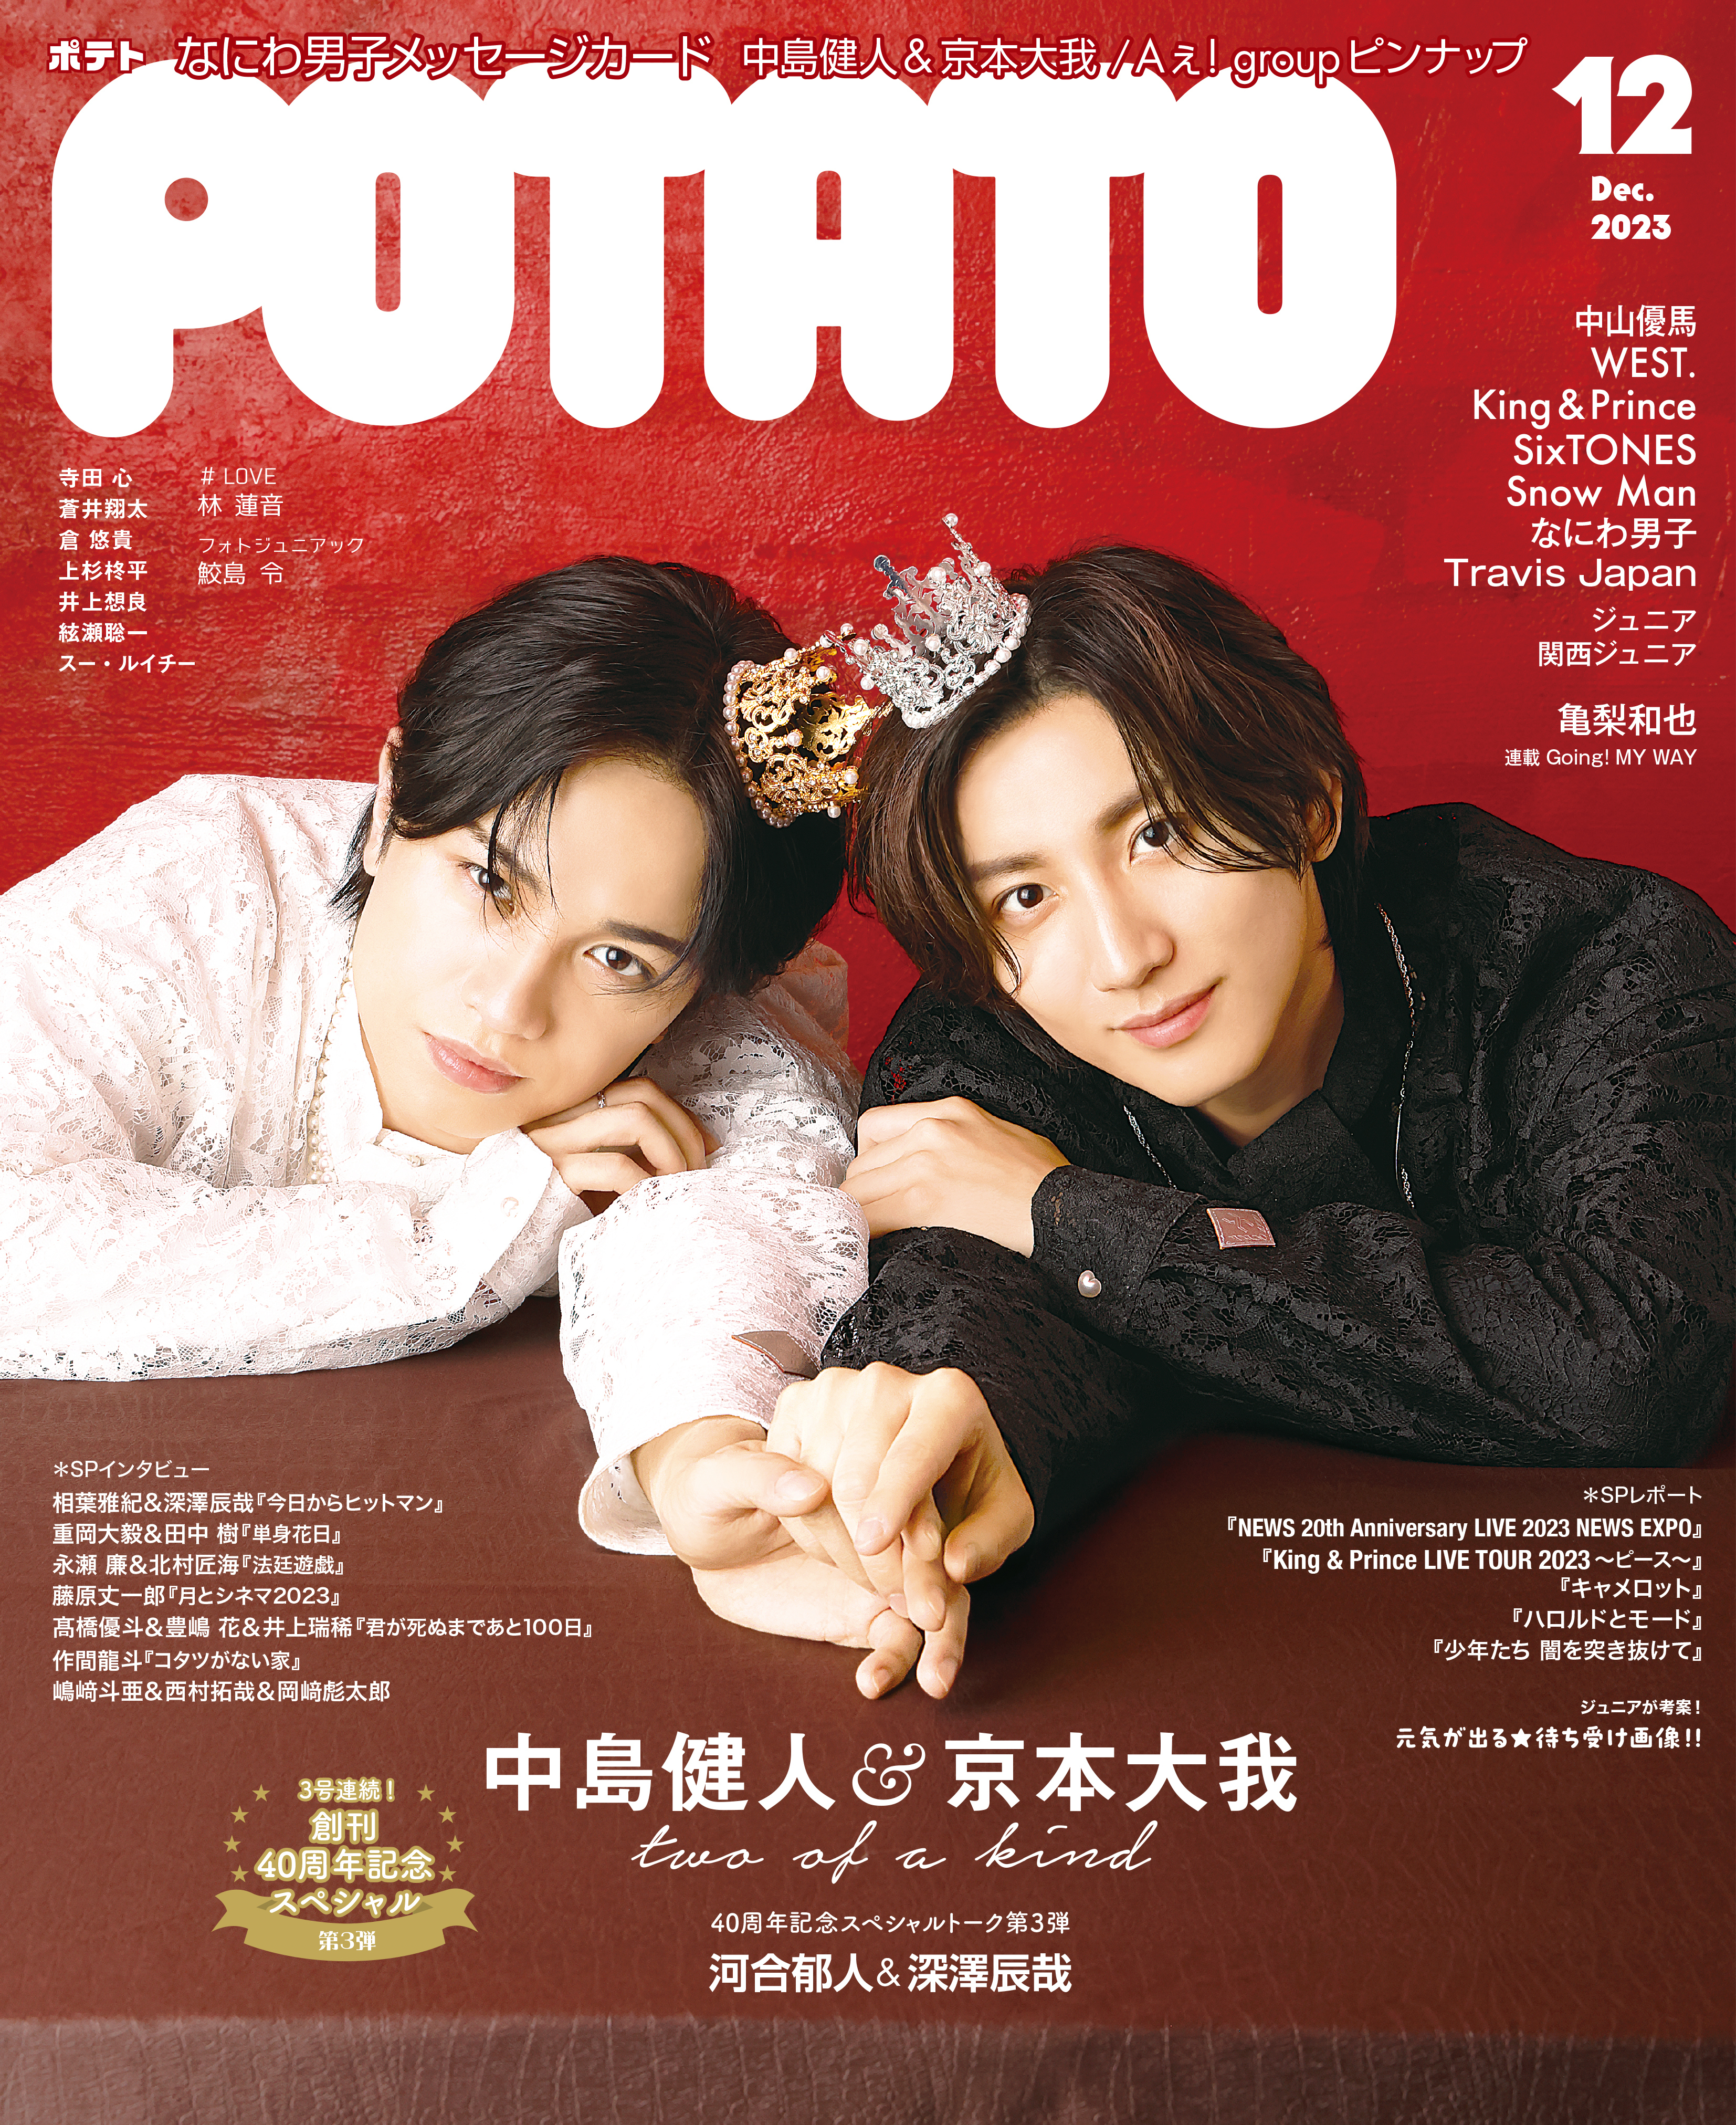 【御取り置き】POTATO 、winkup、duet2017年 01〜12月号